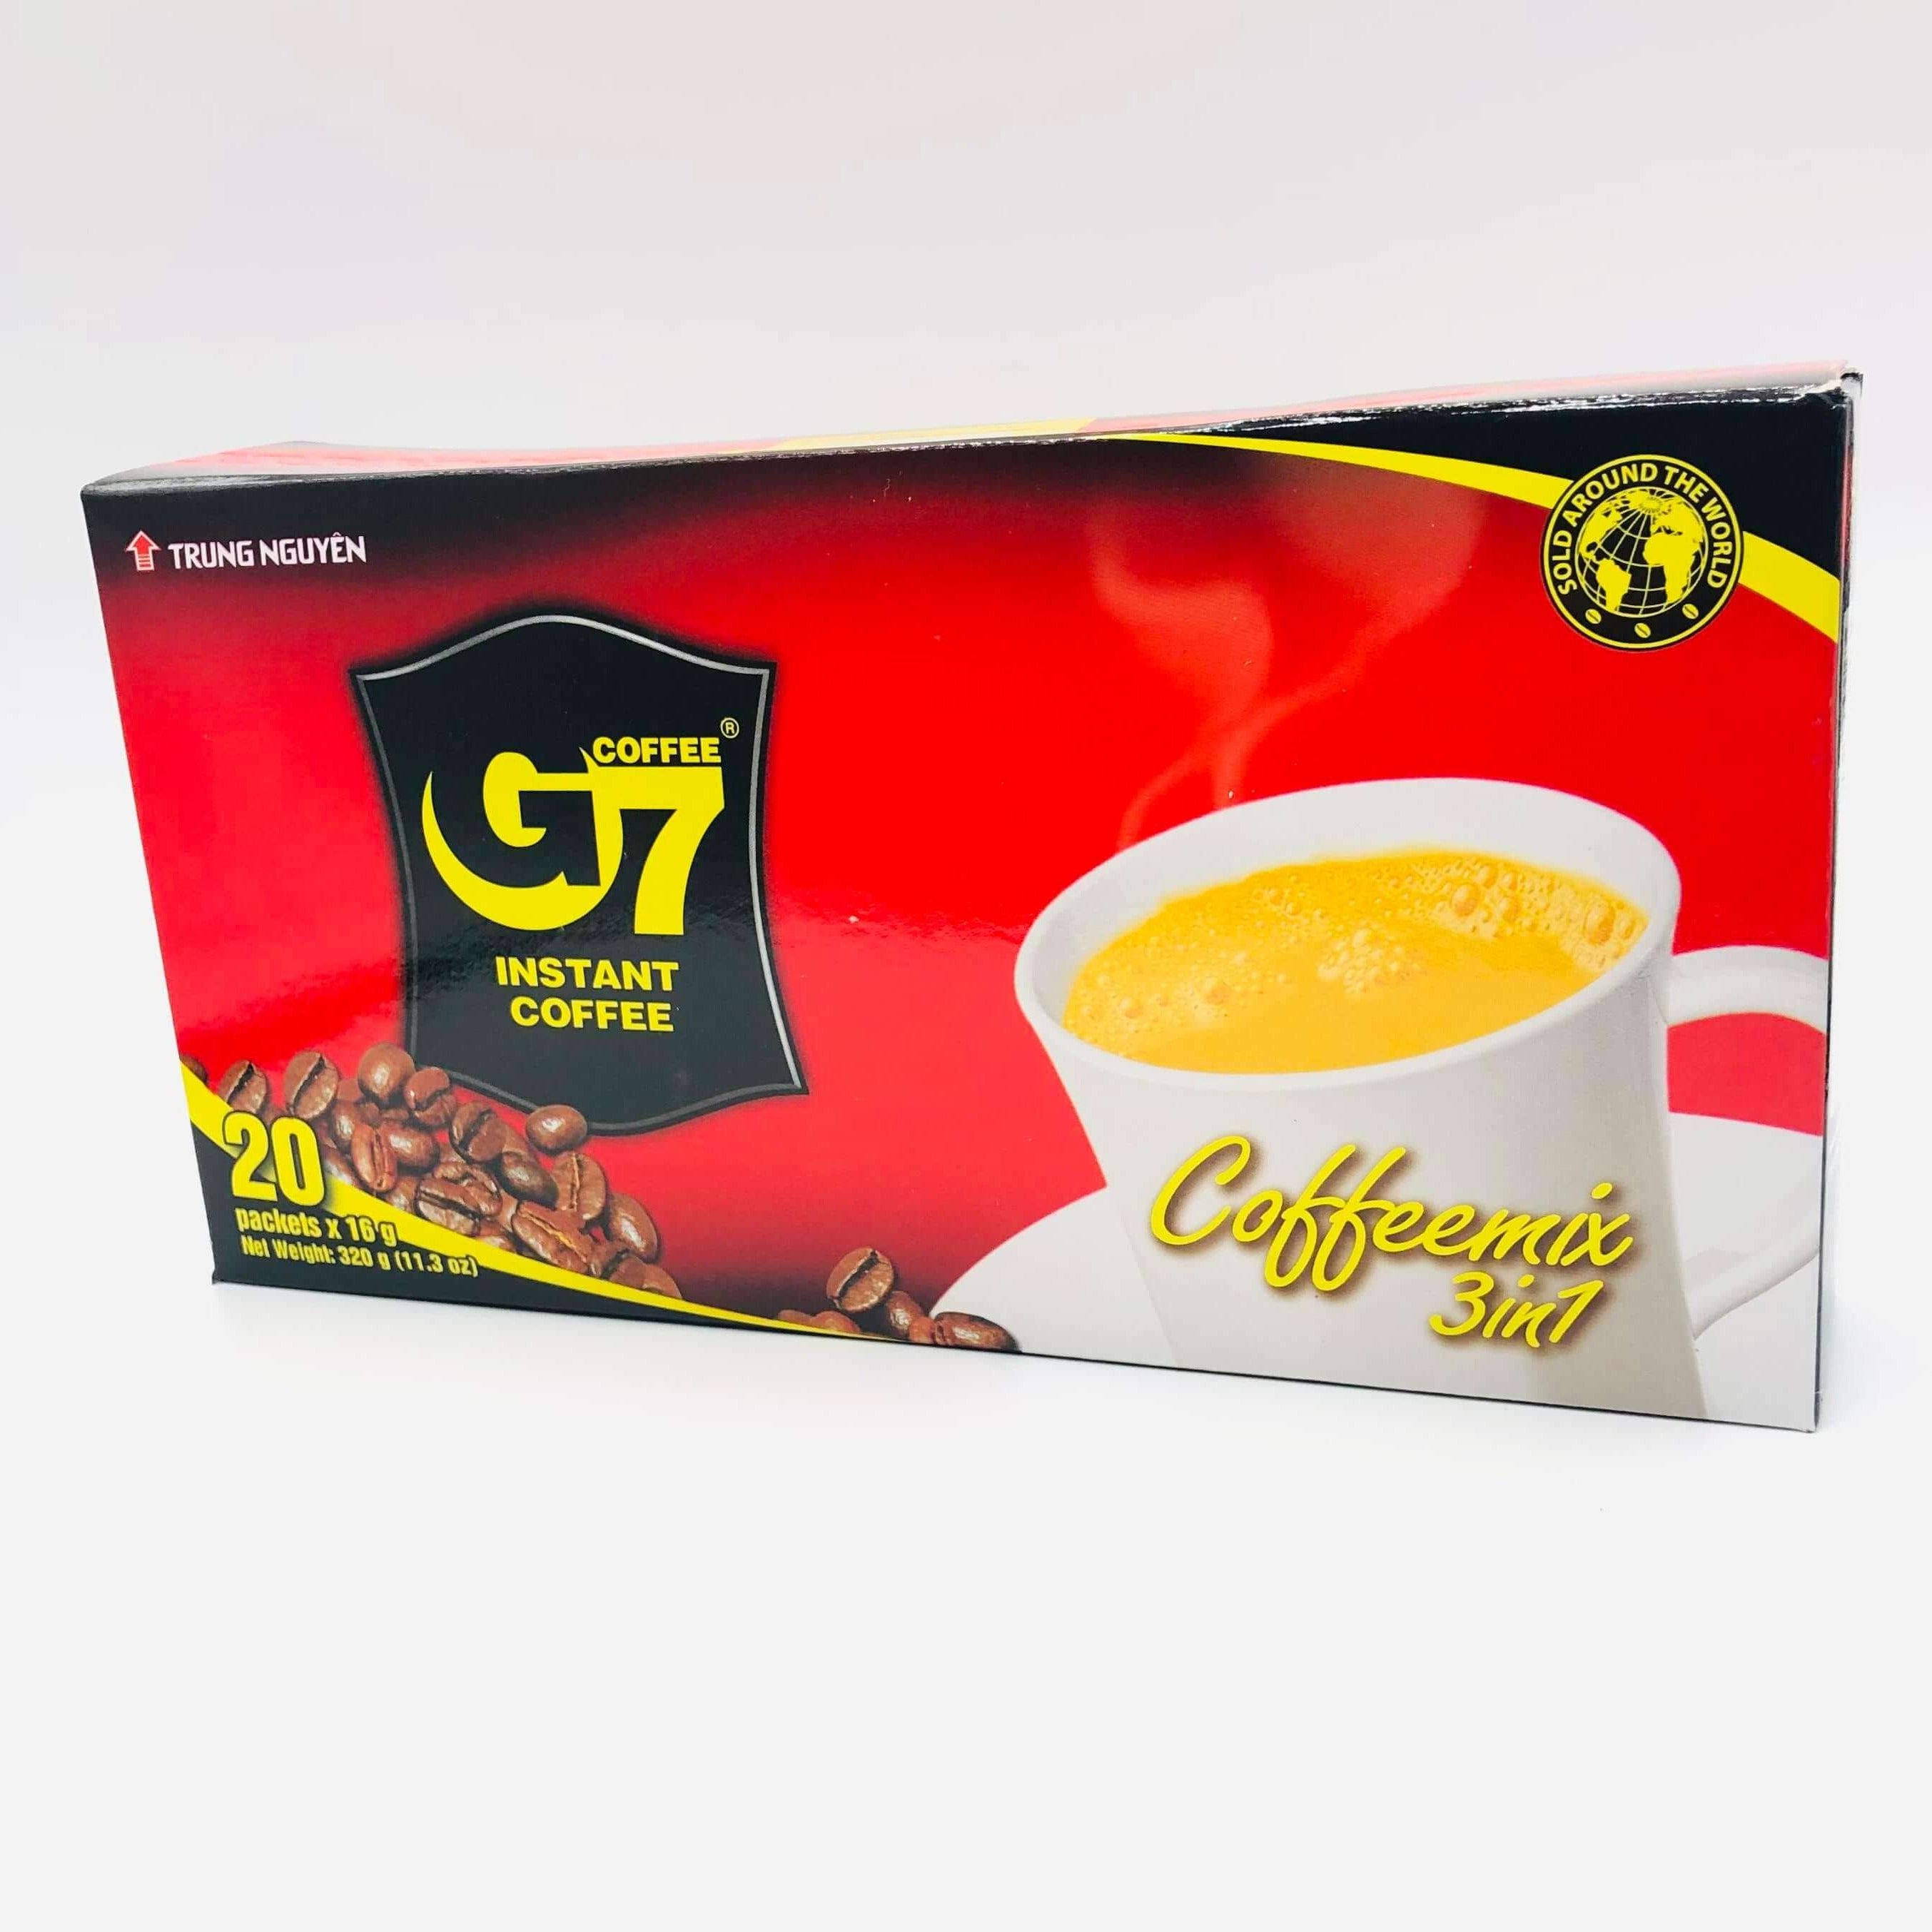 Cà phê Trung Nguyên G7 3in1- hộp 20 gói